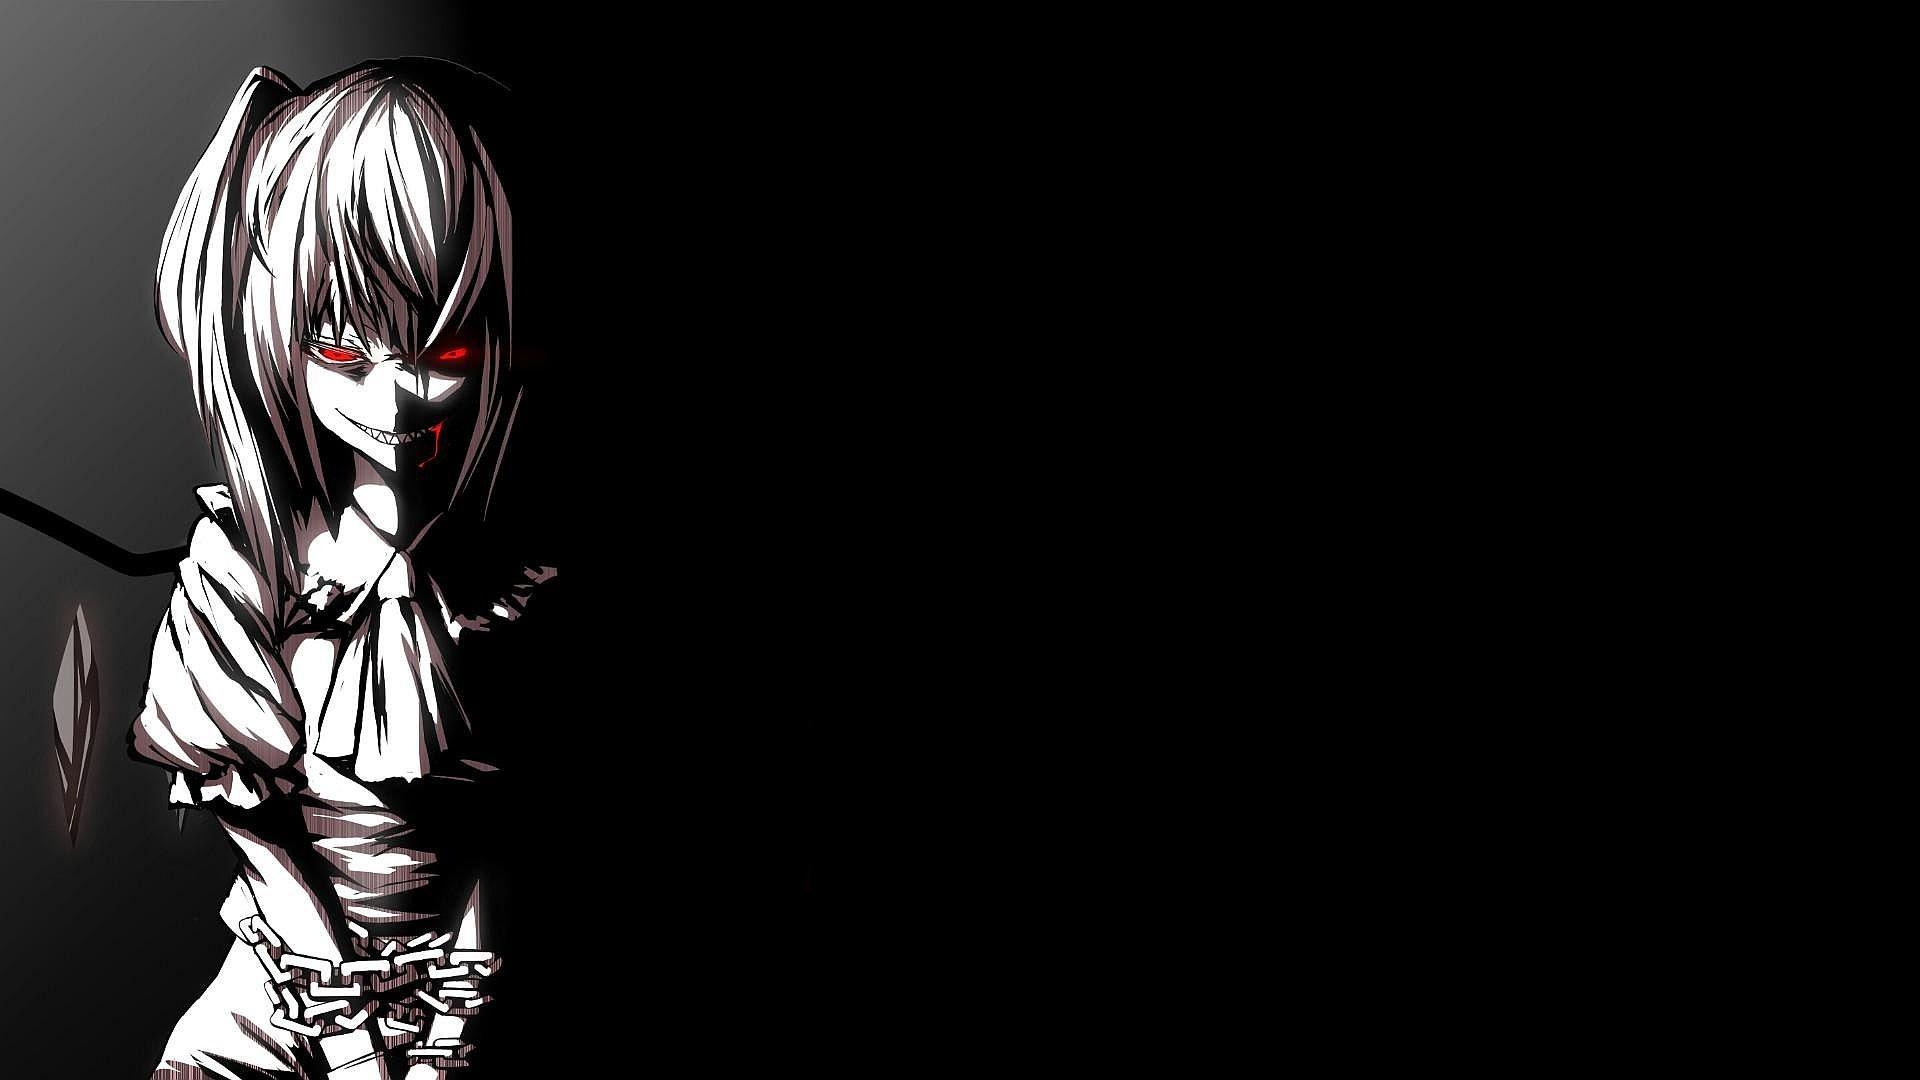 wallpaper for desktop, laptop  bf23-horror-scary-face-dark-anime-eye-art